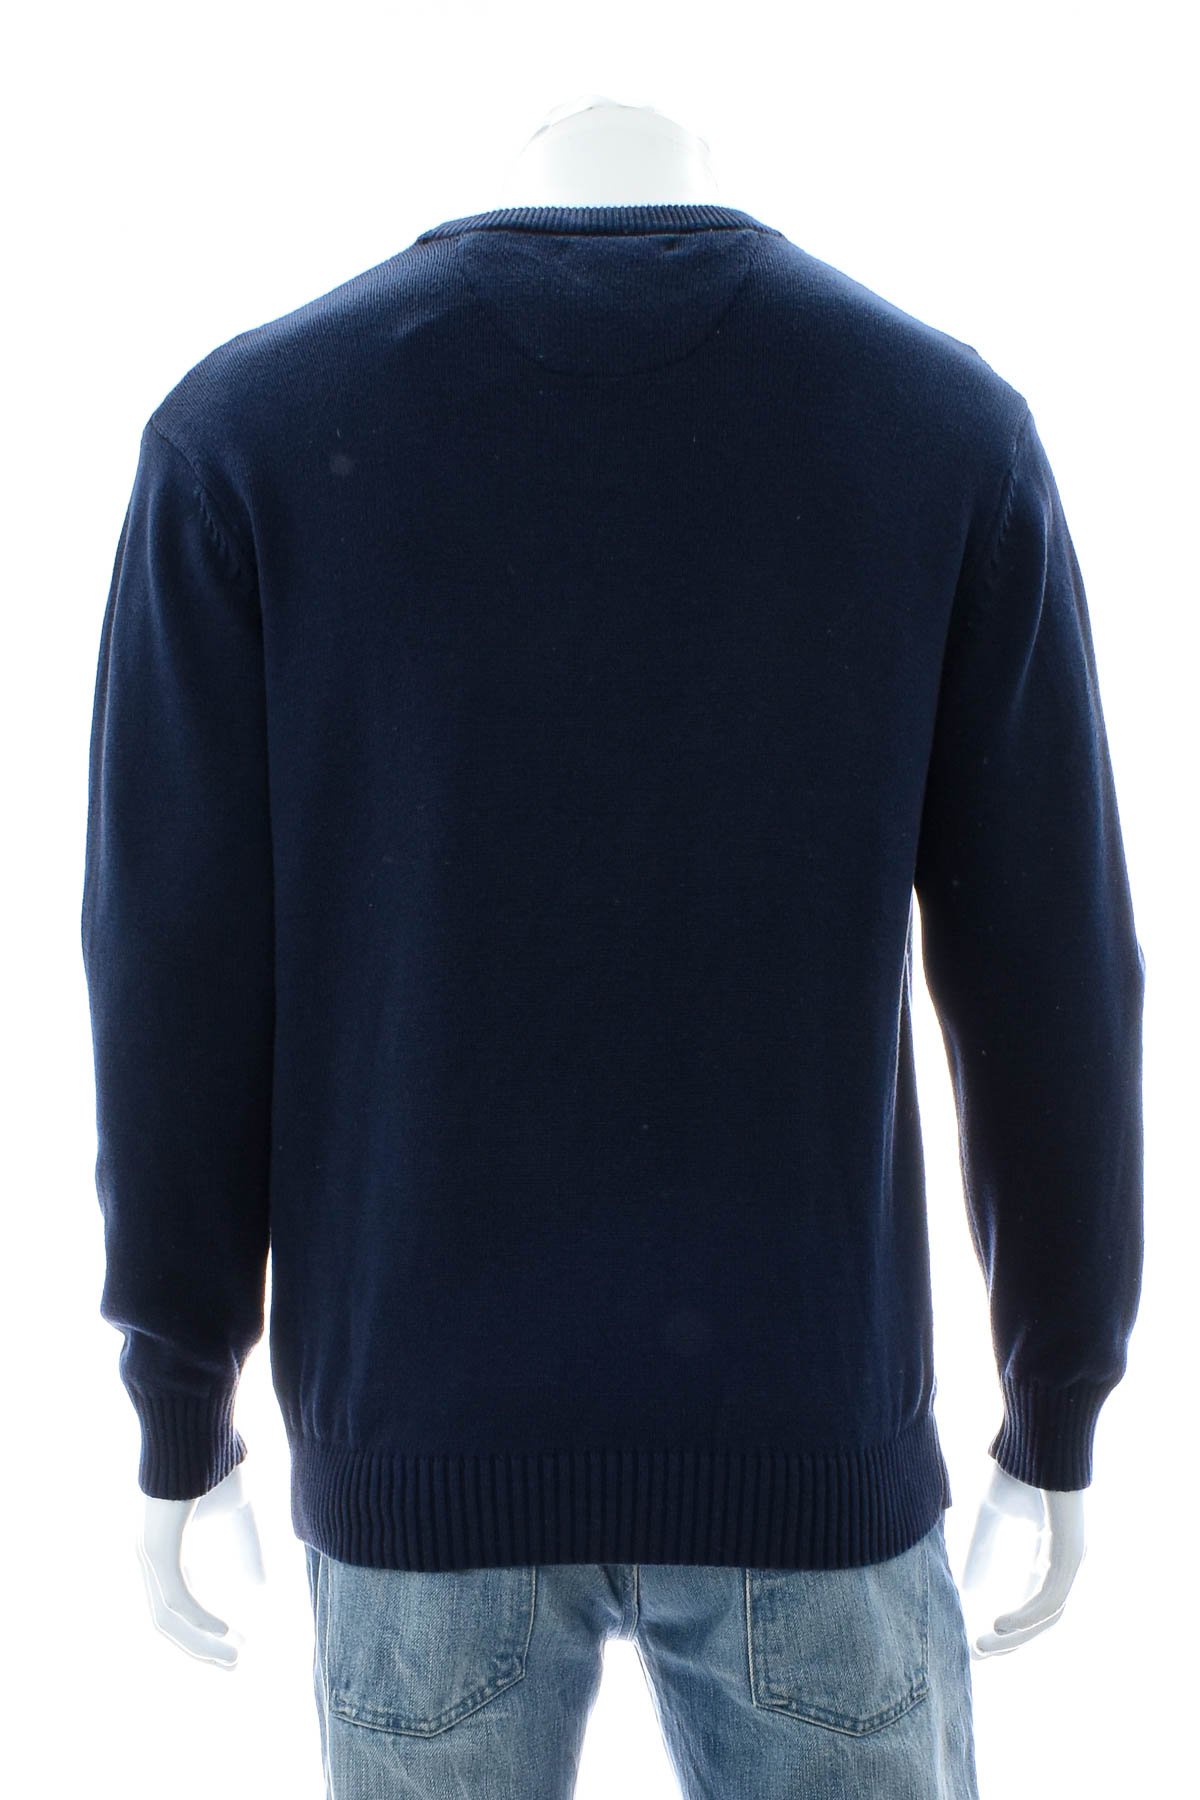 Men's sweater - Authentic - 1